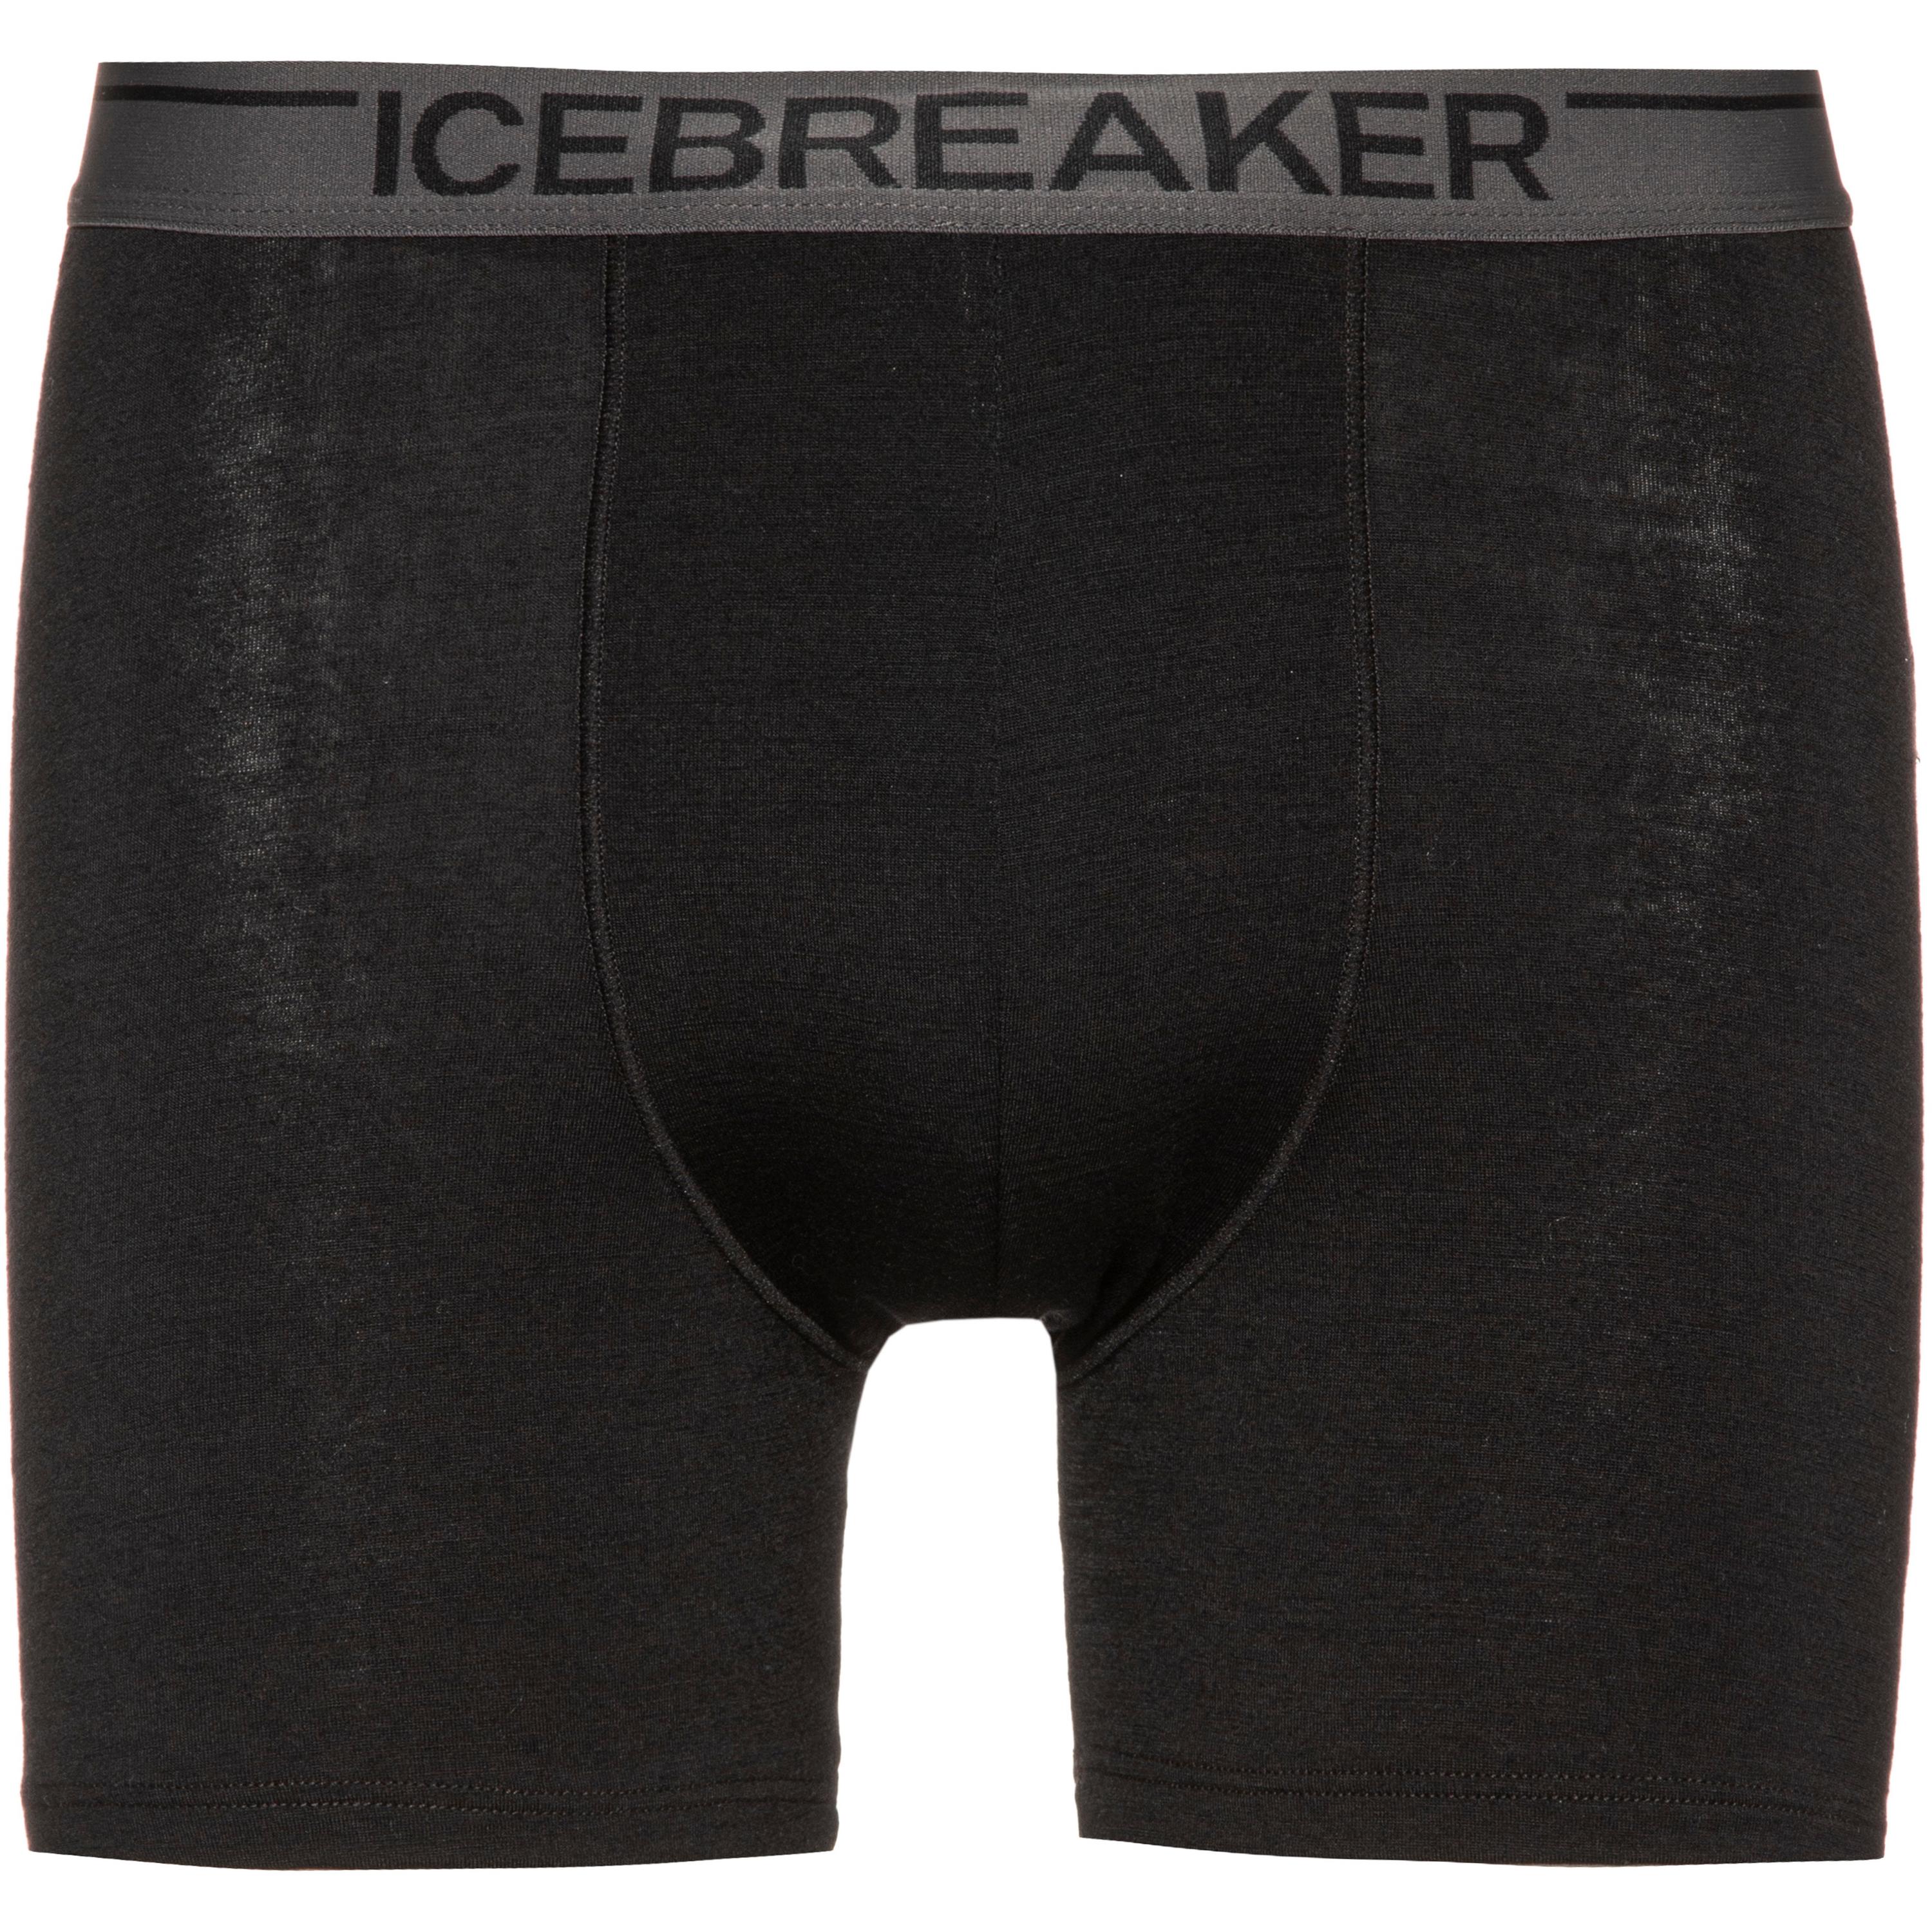 Image of Icebreaker Anatomica Boxer Herren